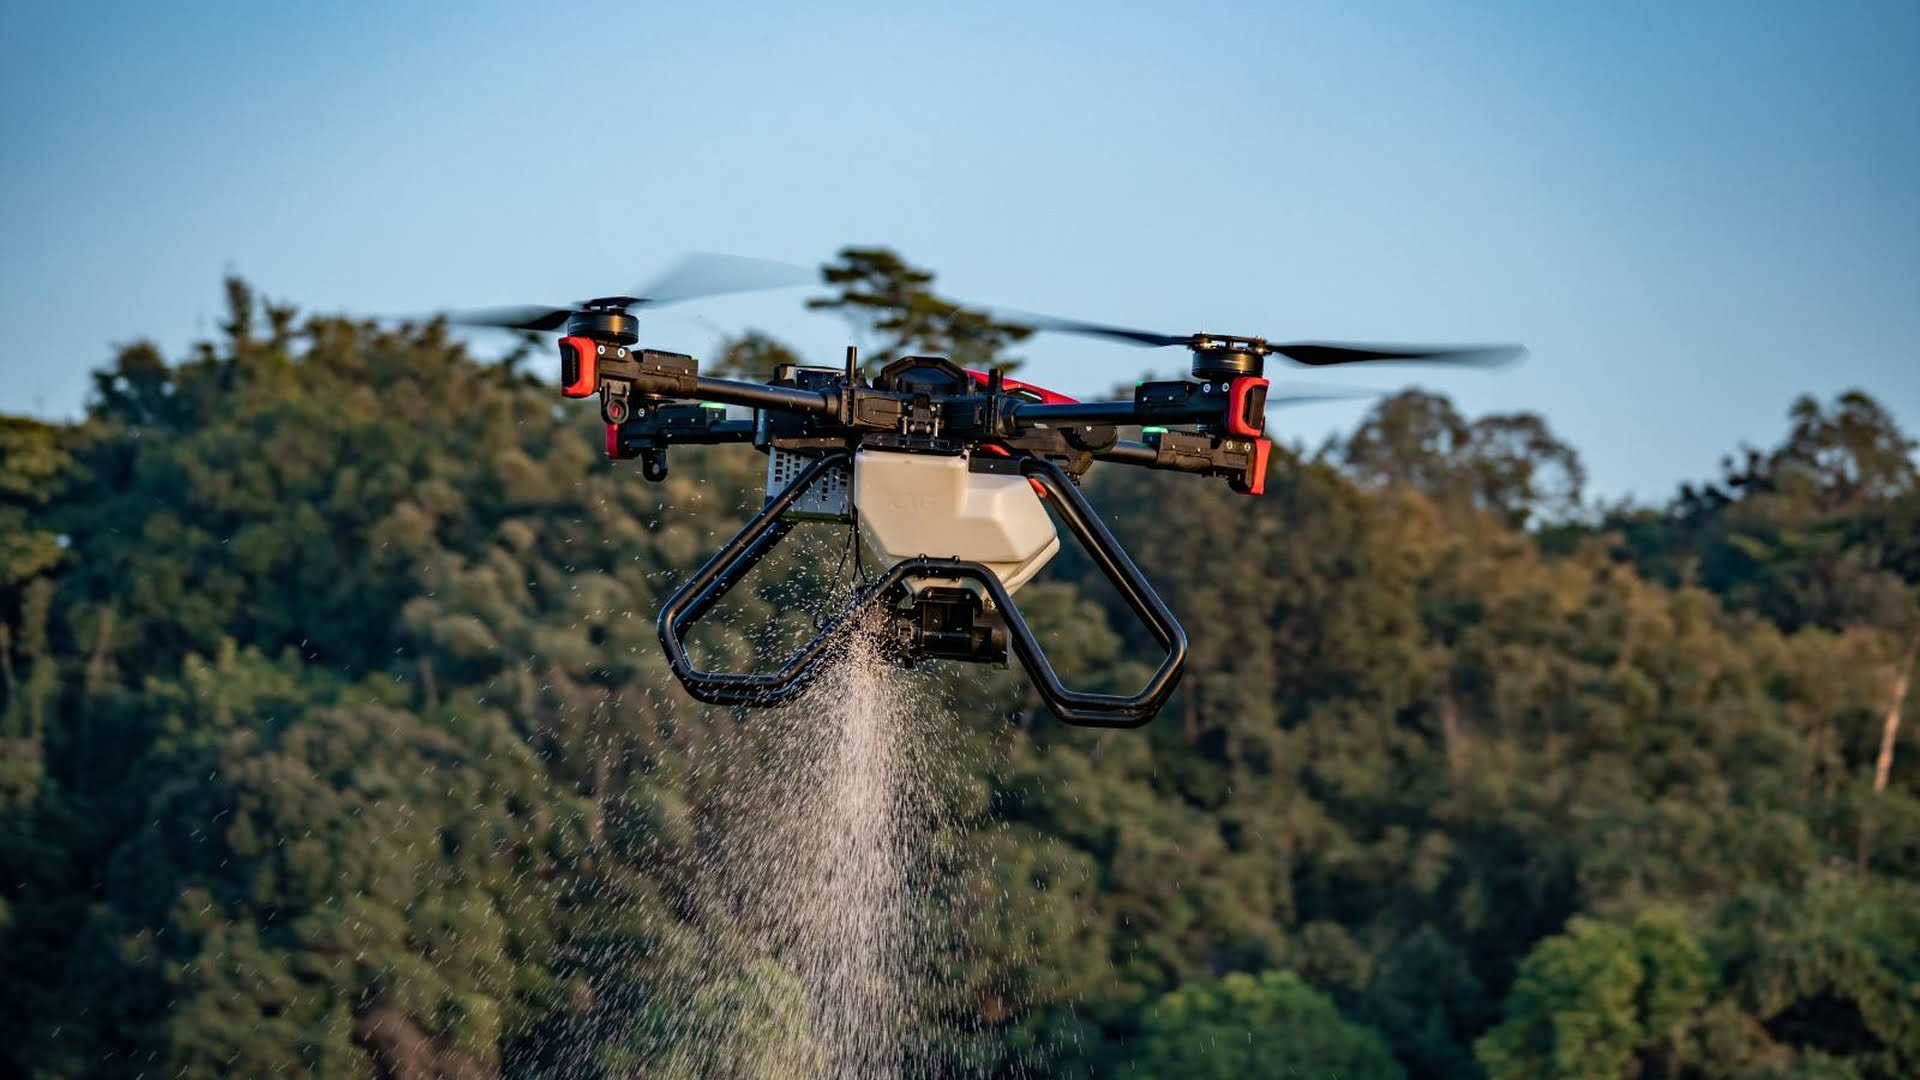 Ein chinesisches Unternehmen stellt autonome Drohnen und Nutzfahrzeuge für smarte Landwirtschaft vor. Sieht so die Zukunft des Ackerbaus aus?